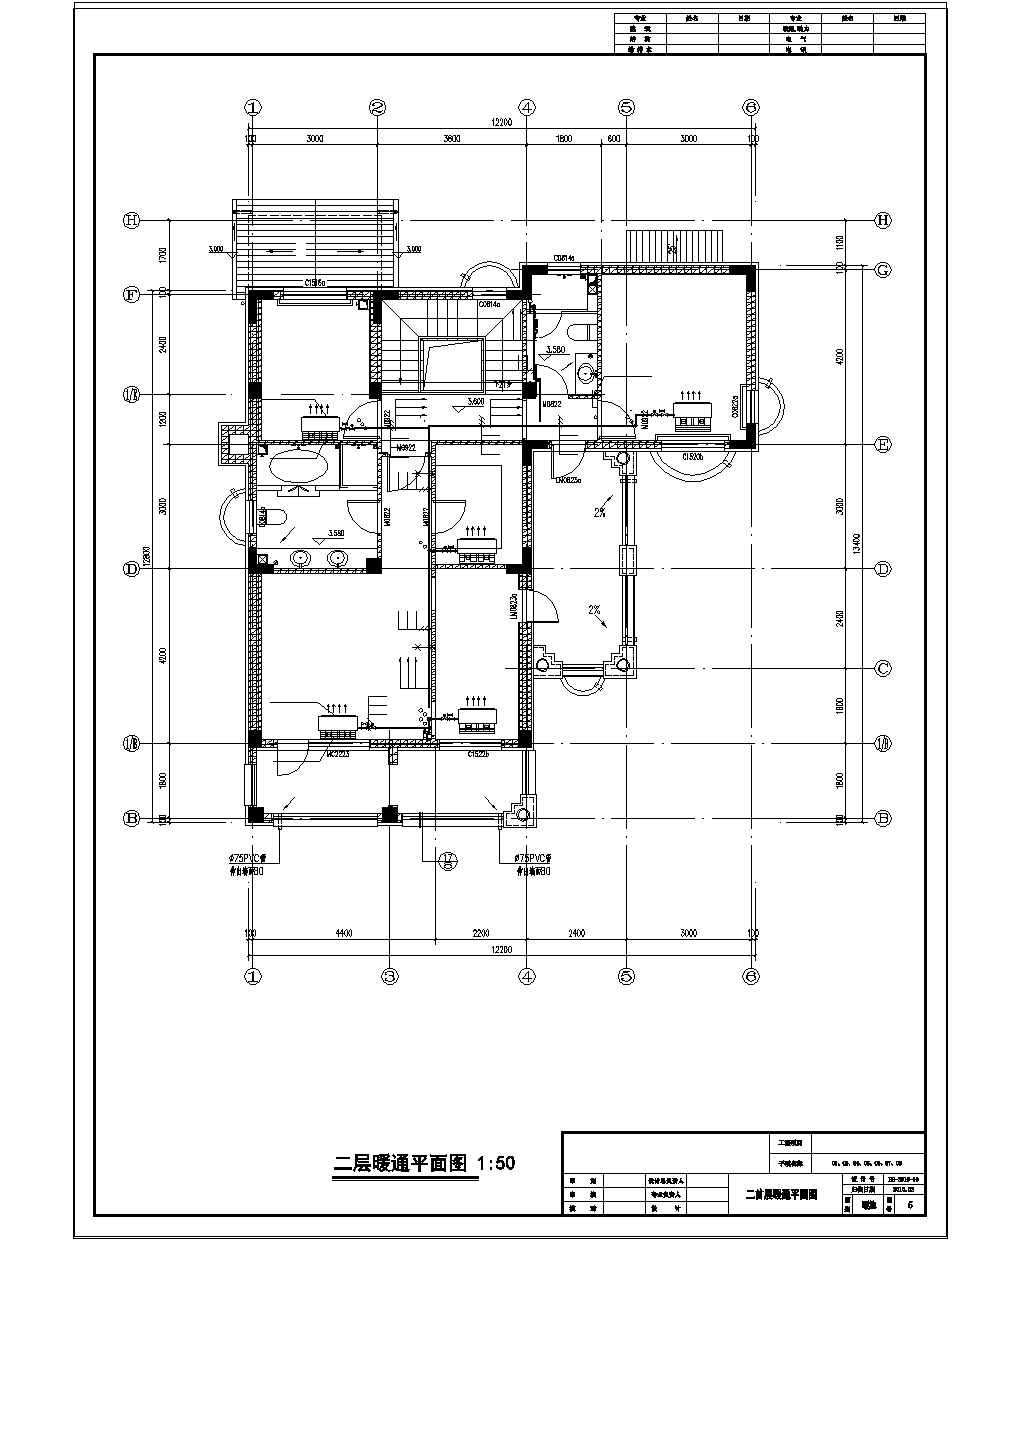 【上海】某庄园住宅楼空调系统设计图纸